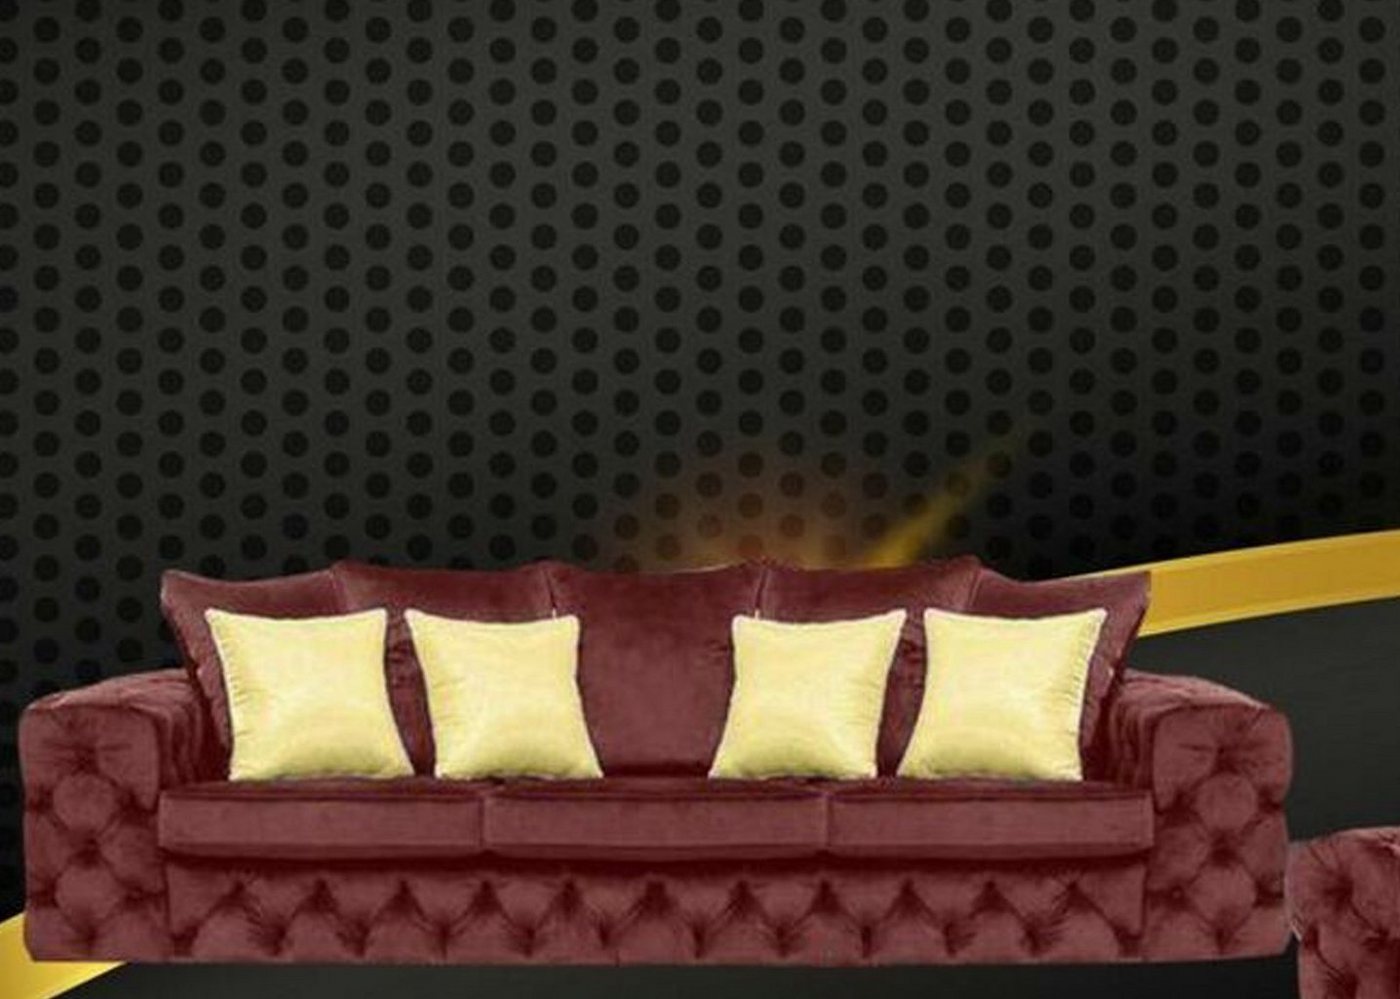 JVmoebel Chesterfield-Sofa, Luxus 4 Sitzer Couch Polster Sofa Leder Stoff Textil Couchen Garnitur Dreisitzer von JVmoebel